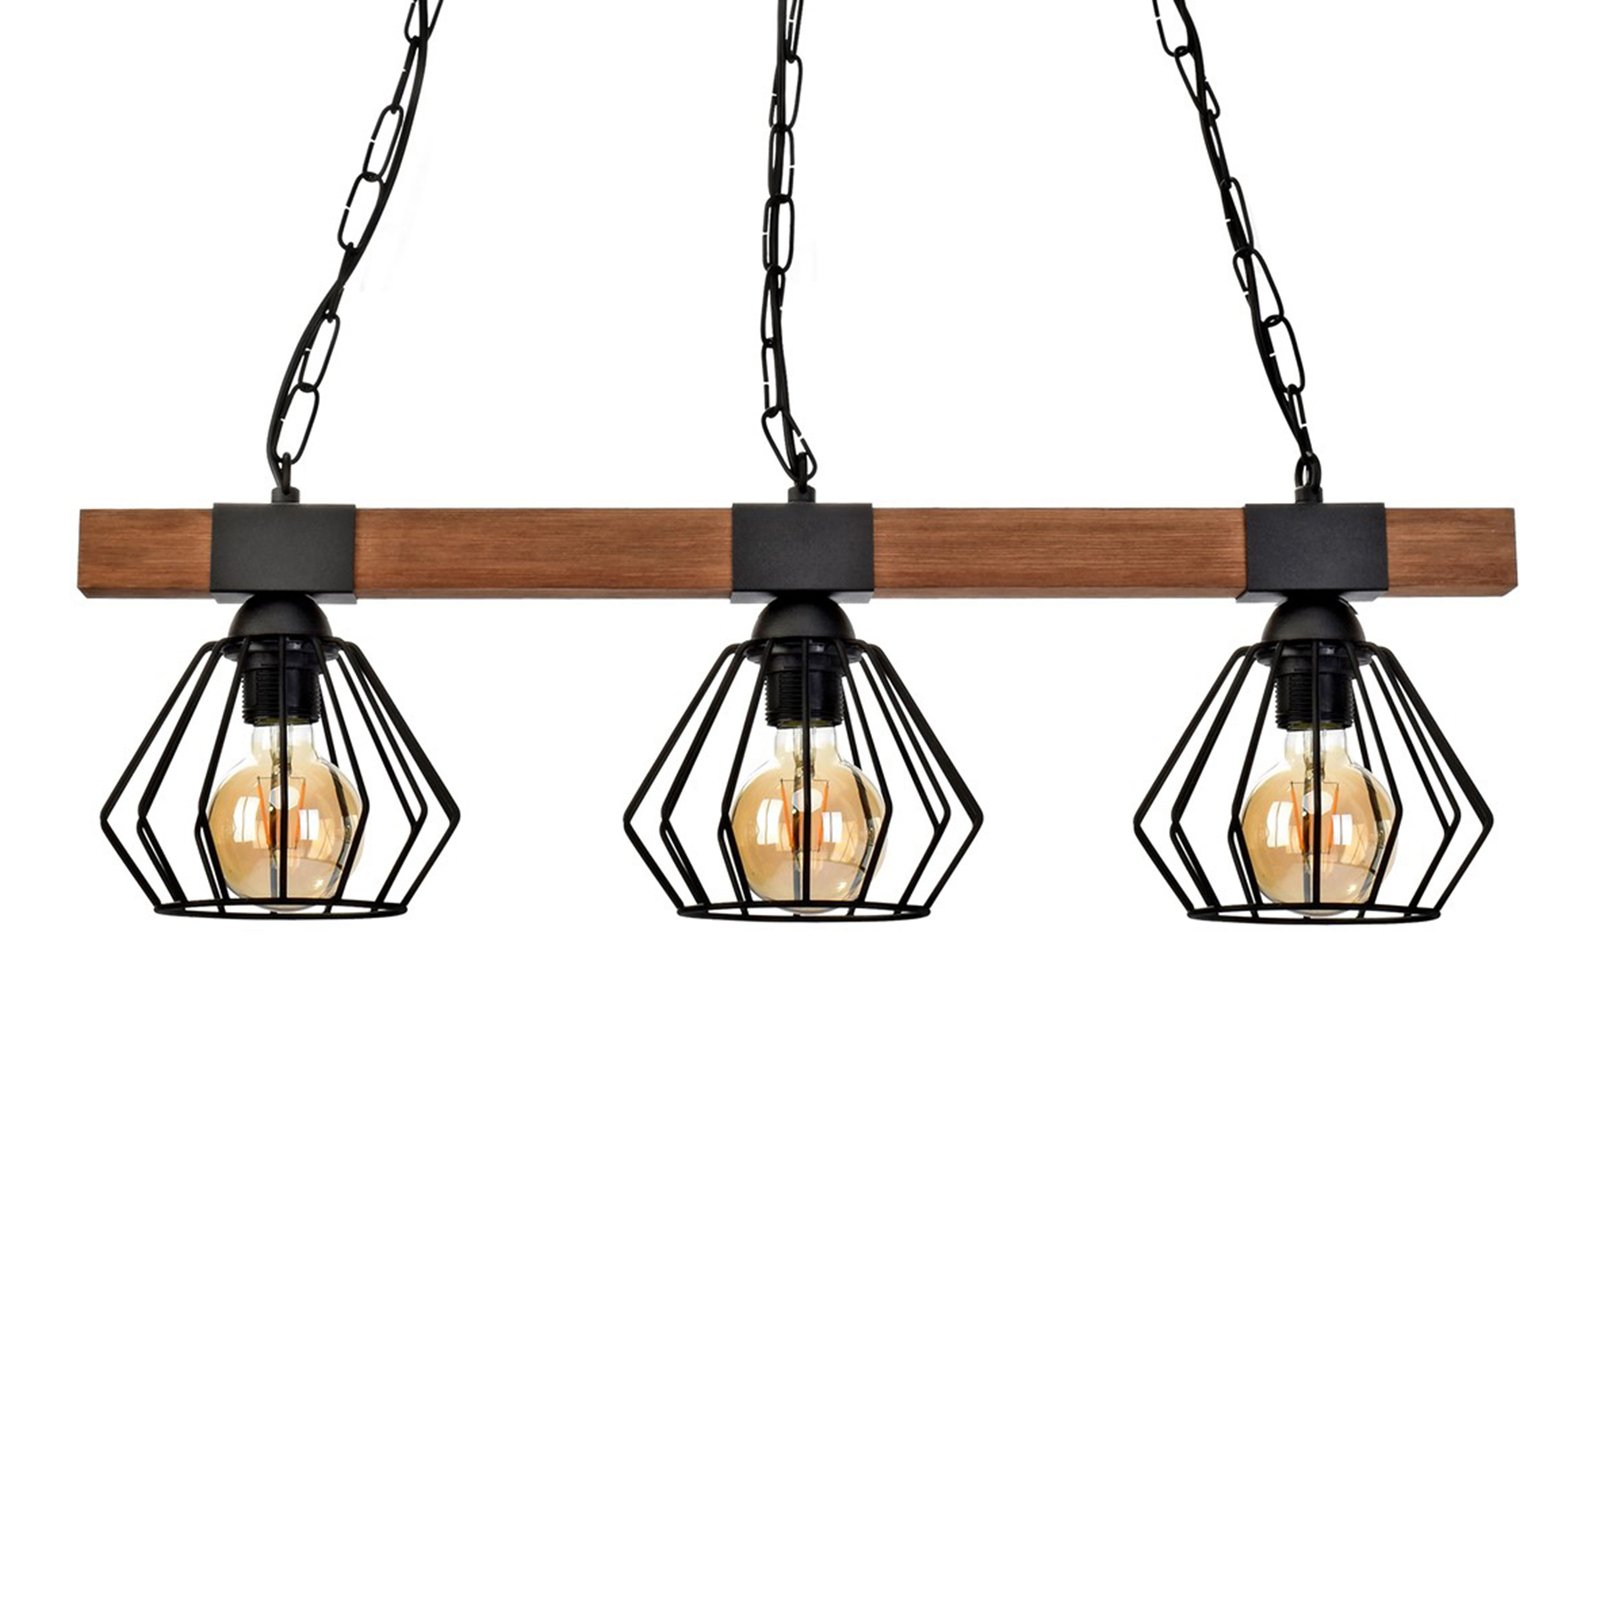 Ulf hængelampe med træbjælke, 3 lyskilder